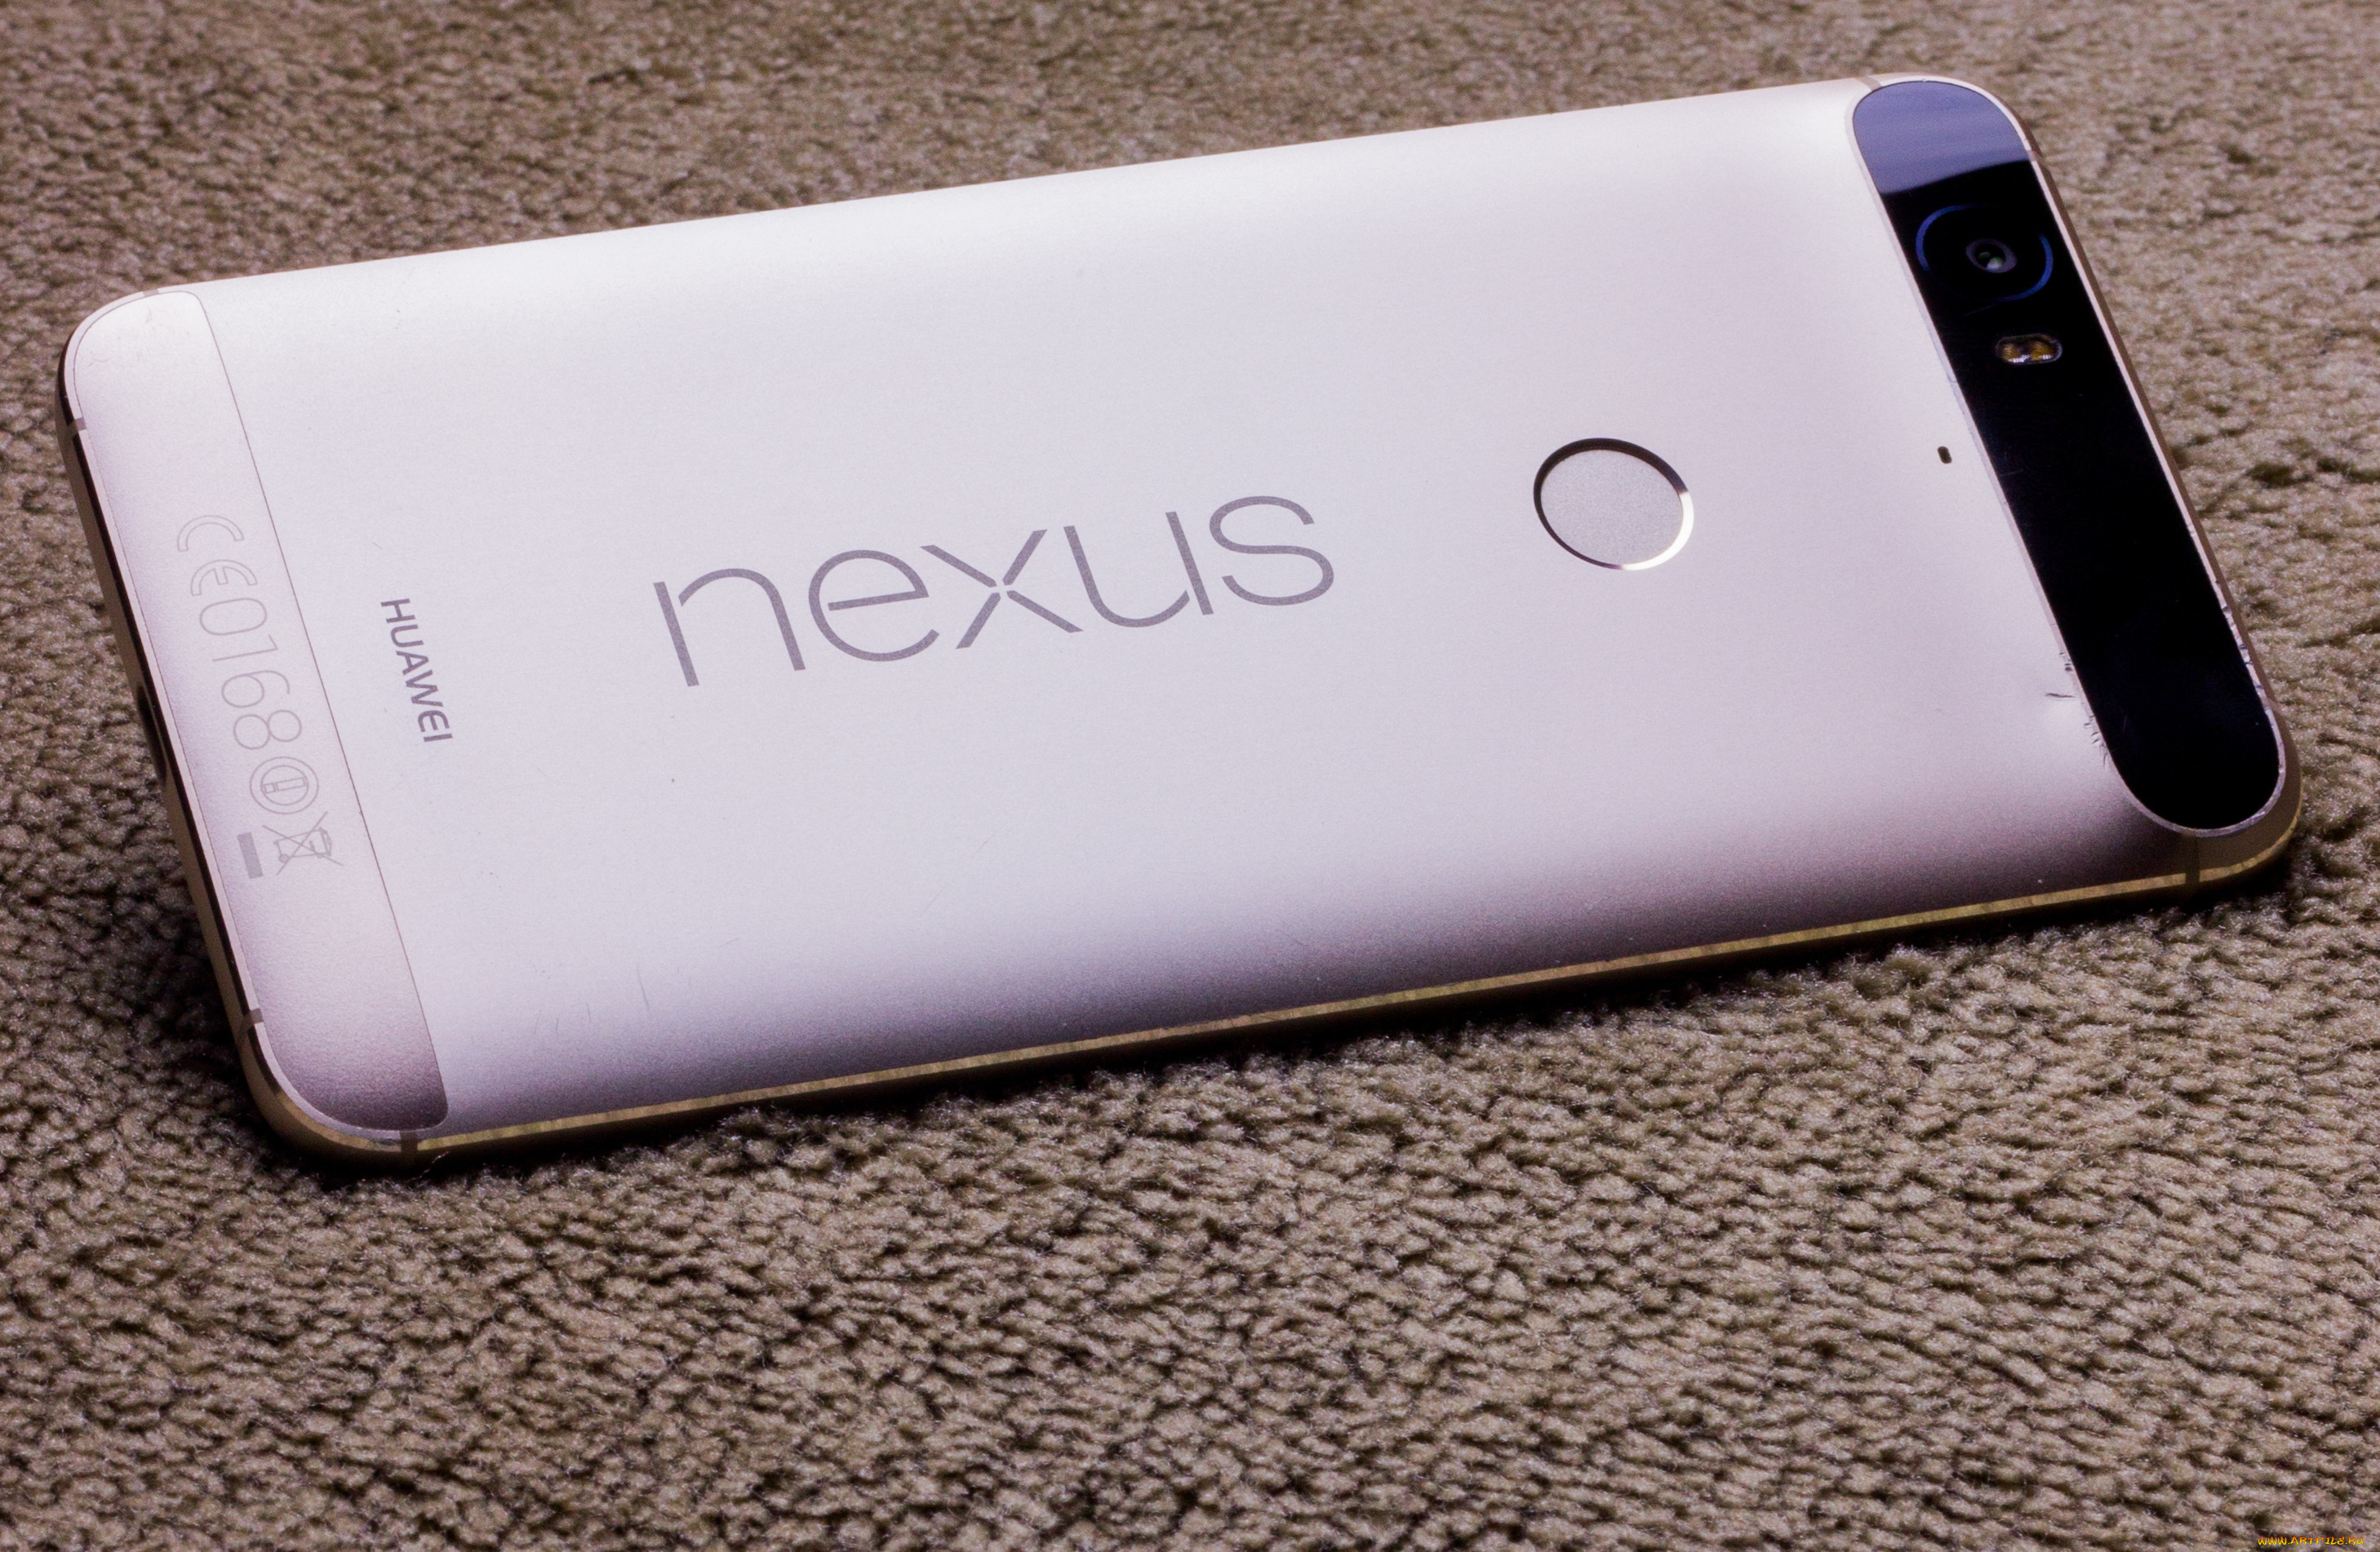 huawei nexus 6p, , - , , android, phone, nexus, marshmallow, 6p, huawei